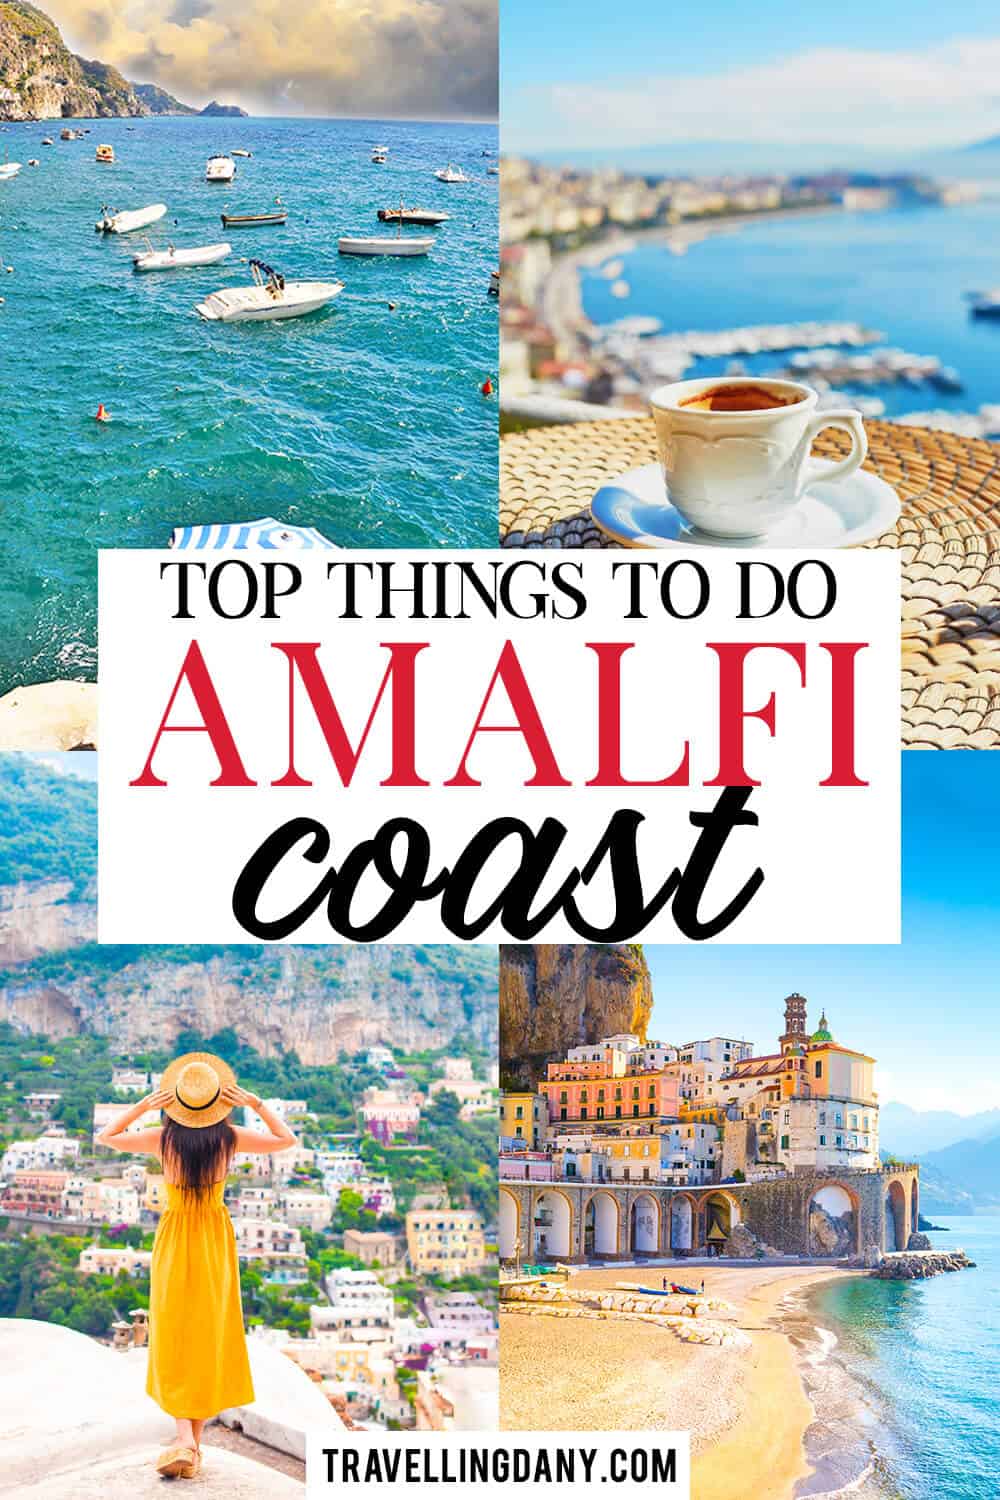 Scopriamo insieme cosa fare sulla Costiera Amalfitana per le tue prossime vacanze estive! Con tante idee utili per vacanze economiche ma divertenti, con tutta la famiglia!